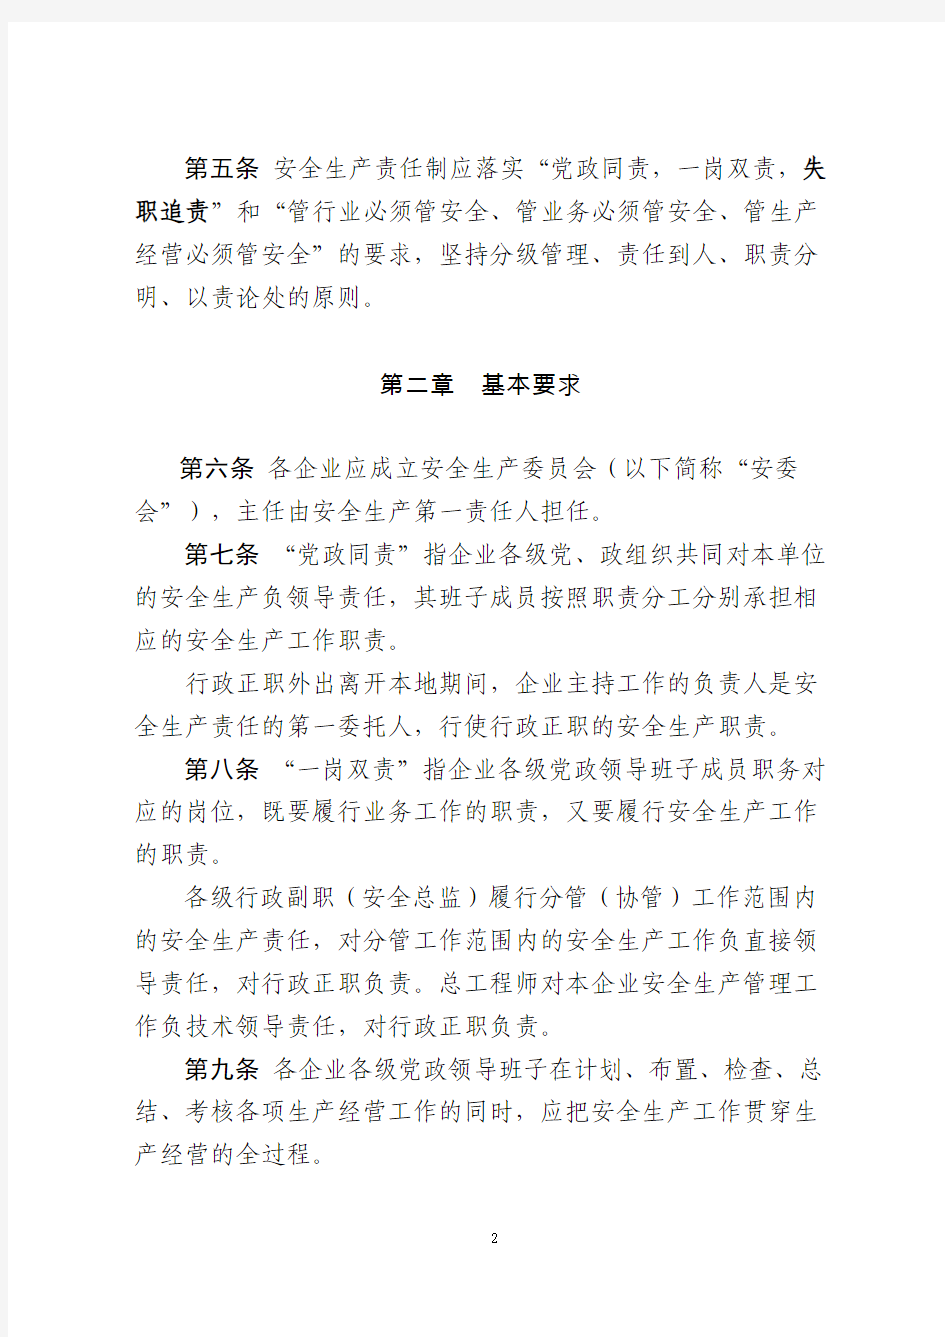 中国大唐集团公司安全生产责任制管理办法(2015版)